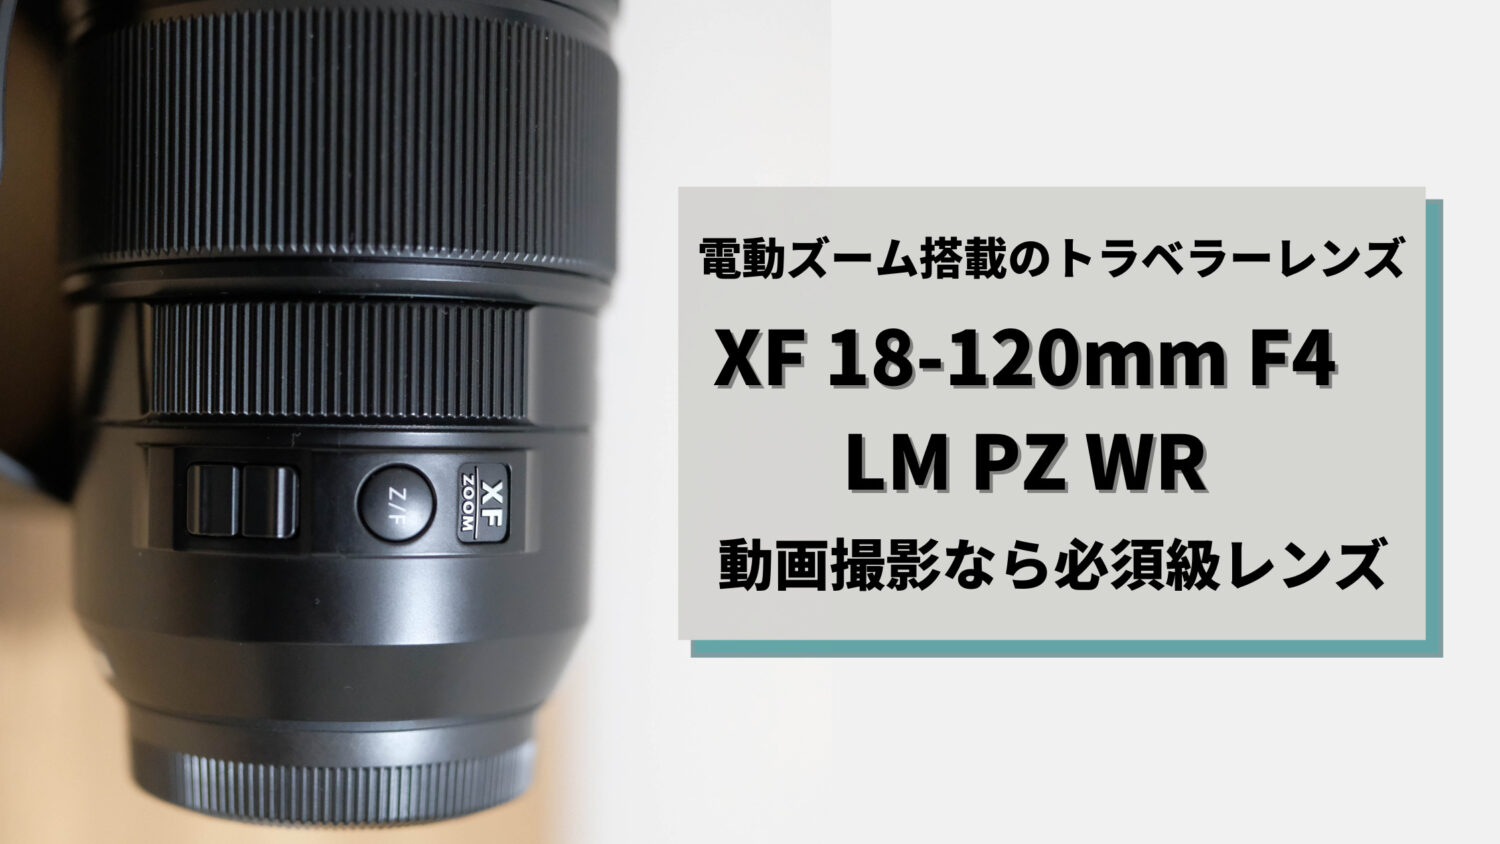 【実機レビュー】富士フイルムのカメラで動画撮影するなら必須レンズ『XF18-120mmF4 LM PZ WR』